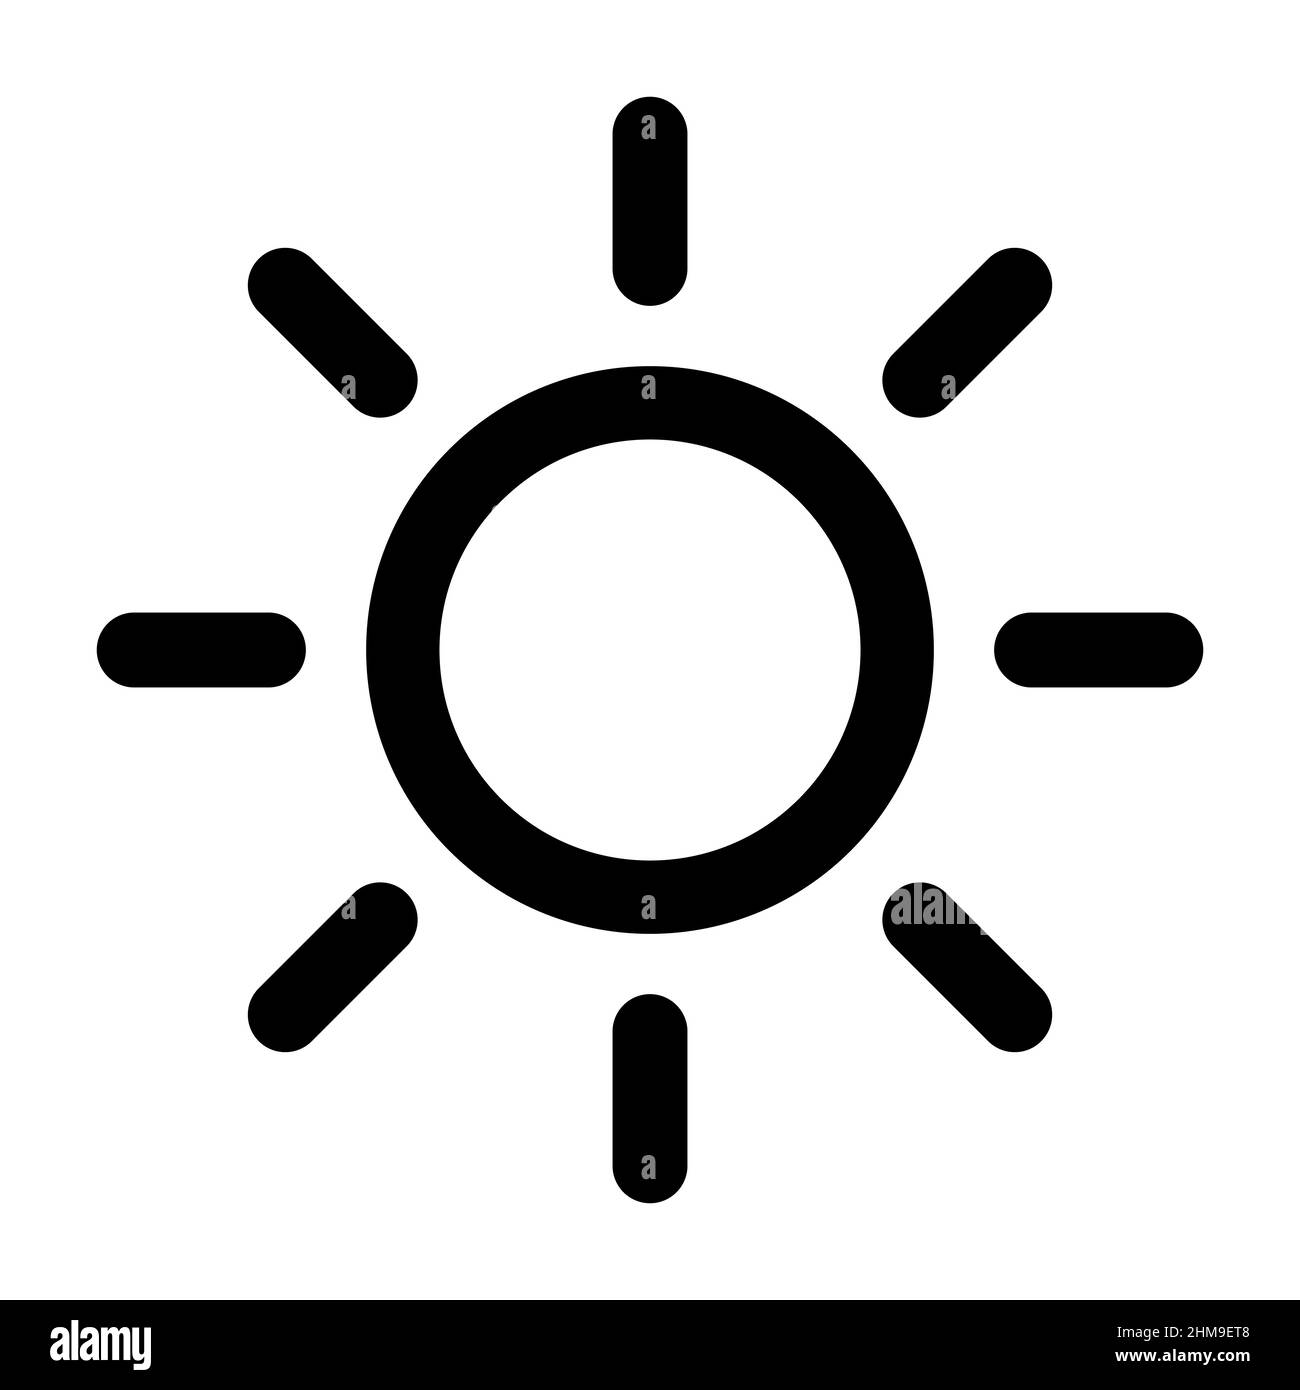 Helligkeitssymbol in flacher Form. Symbol für Intensitätseinstellung auf weißem Hintergrund isoliert. Einfaches Sonnensymbol. Vektorgrafik für Grafikdesign, Web, Mo Stock Vektor